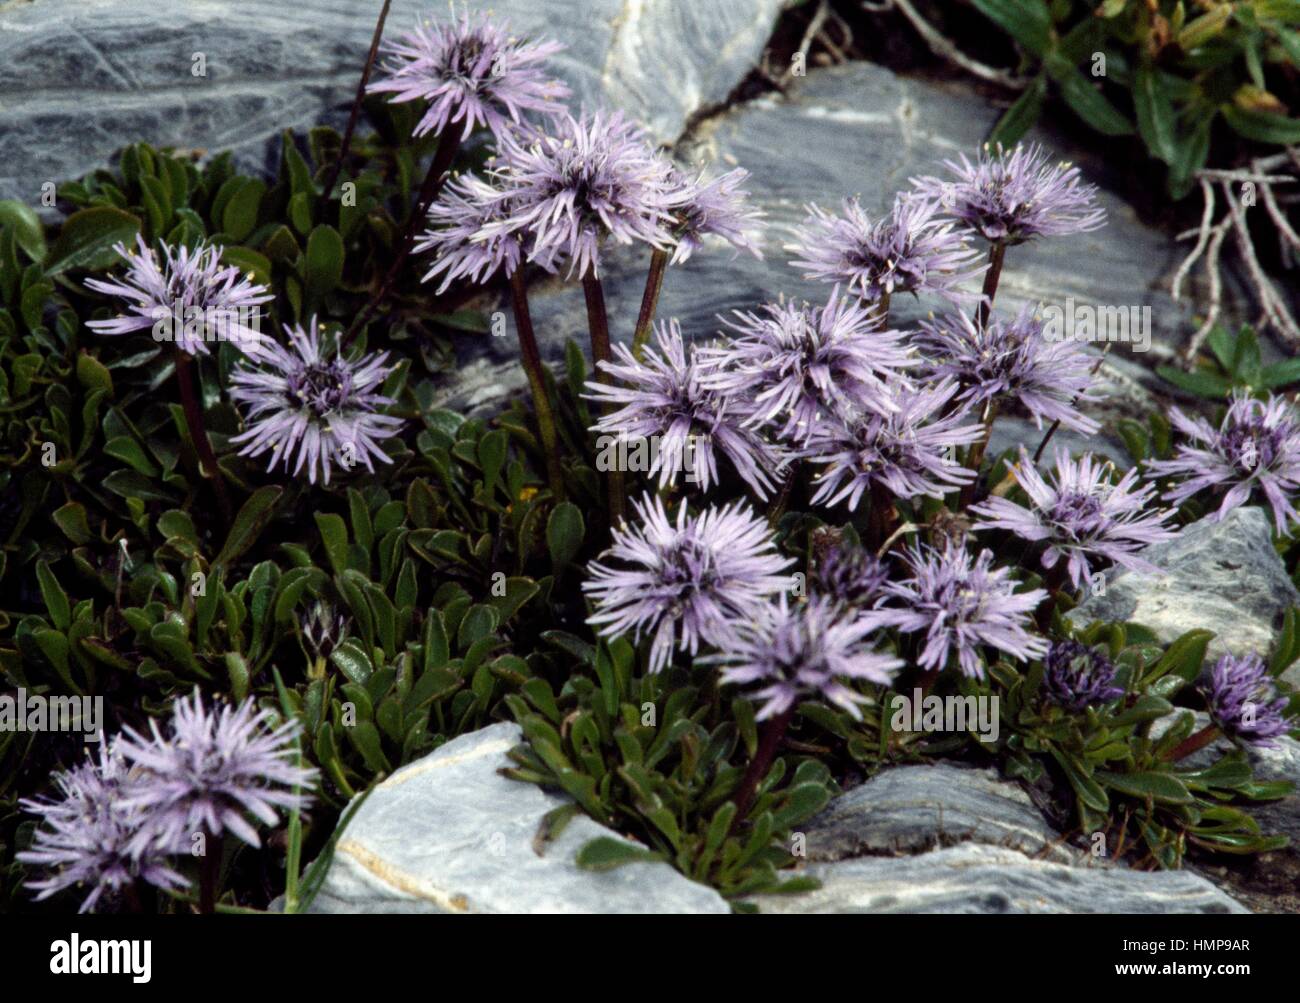 Globularia repens, Plantaginaceae. Stock Photo